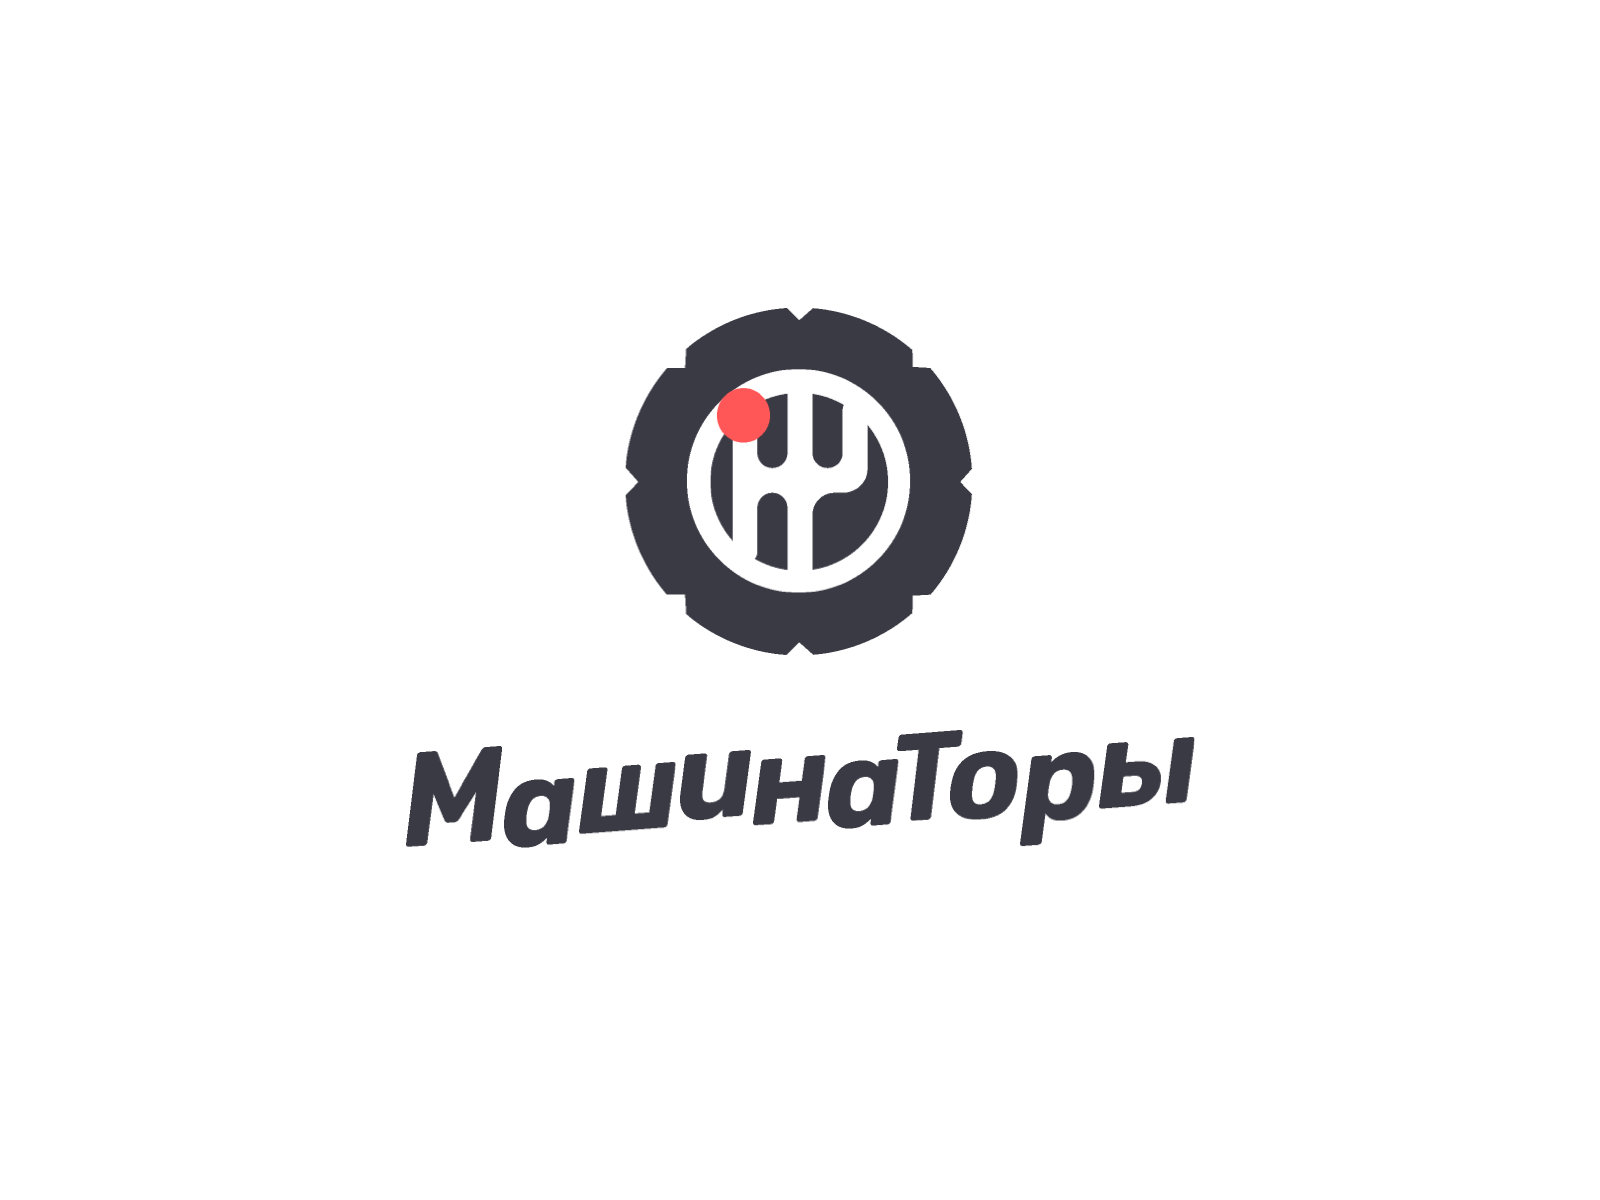 Mashinatory logo for youtube channel